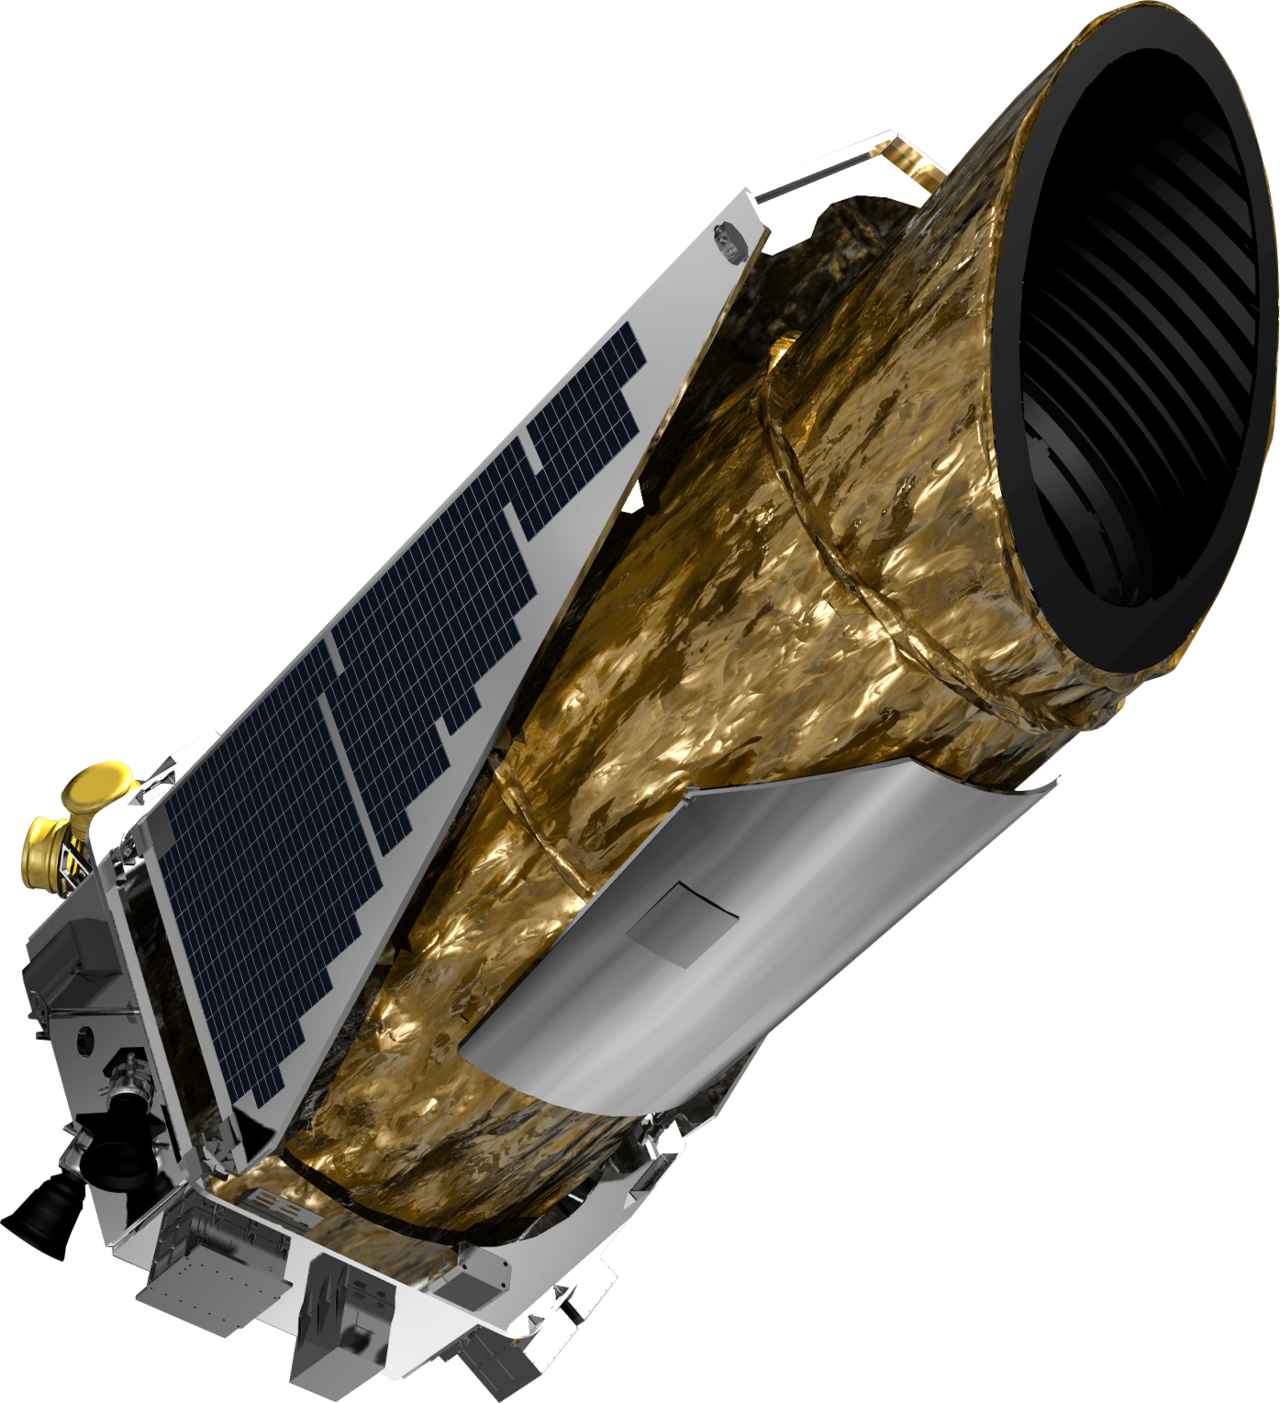 NASA Kepler Space Telescope - Кеплер - космическая обсерватория для поиска экзопланет